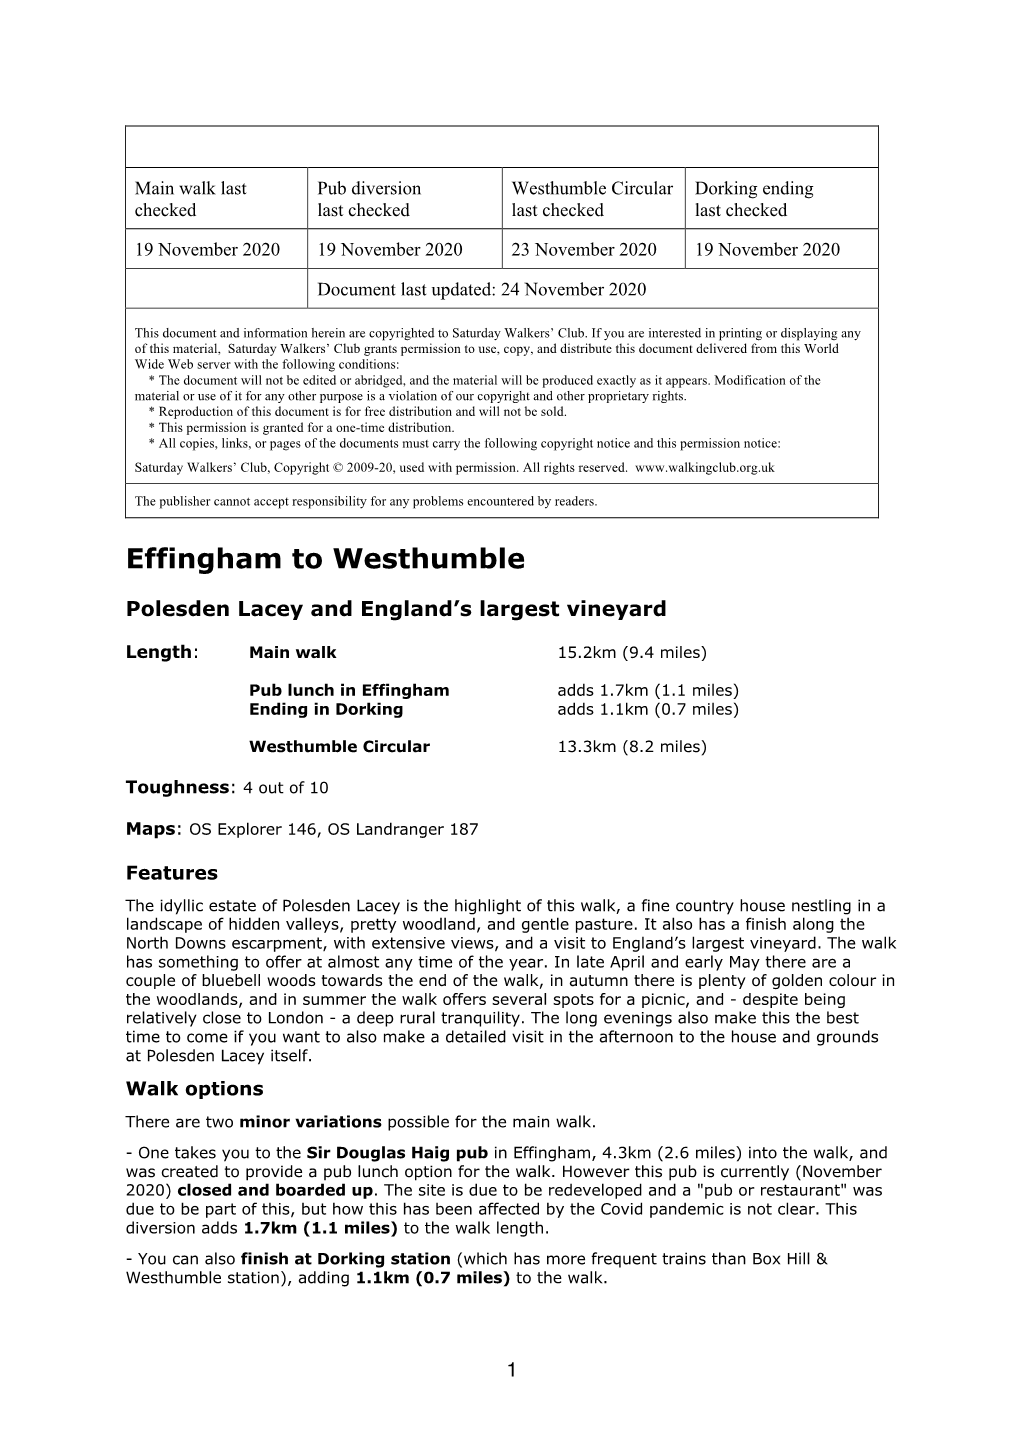 Effingham to Westhumble